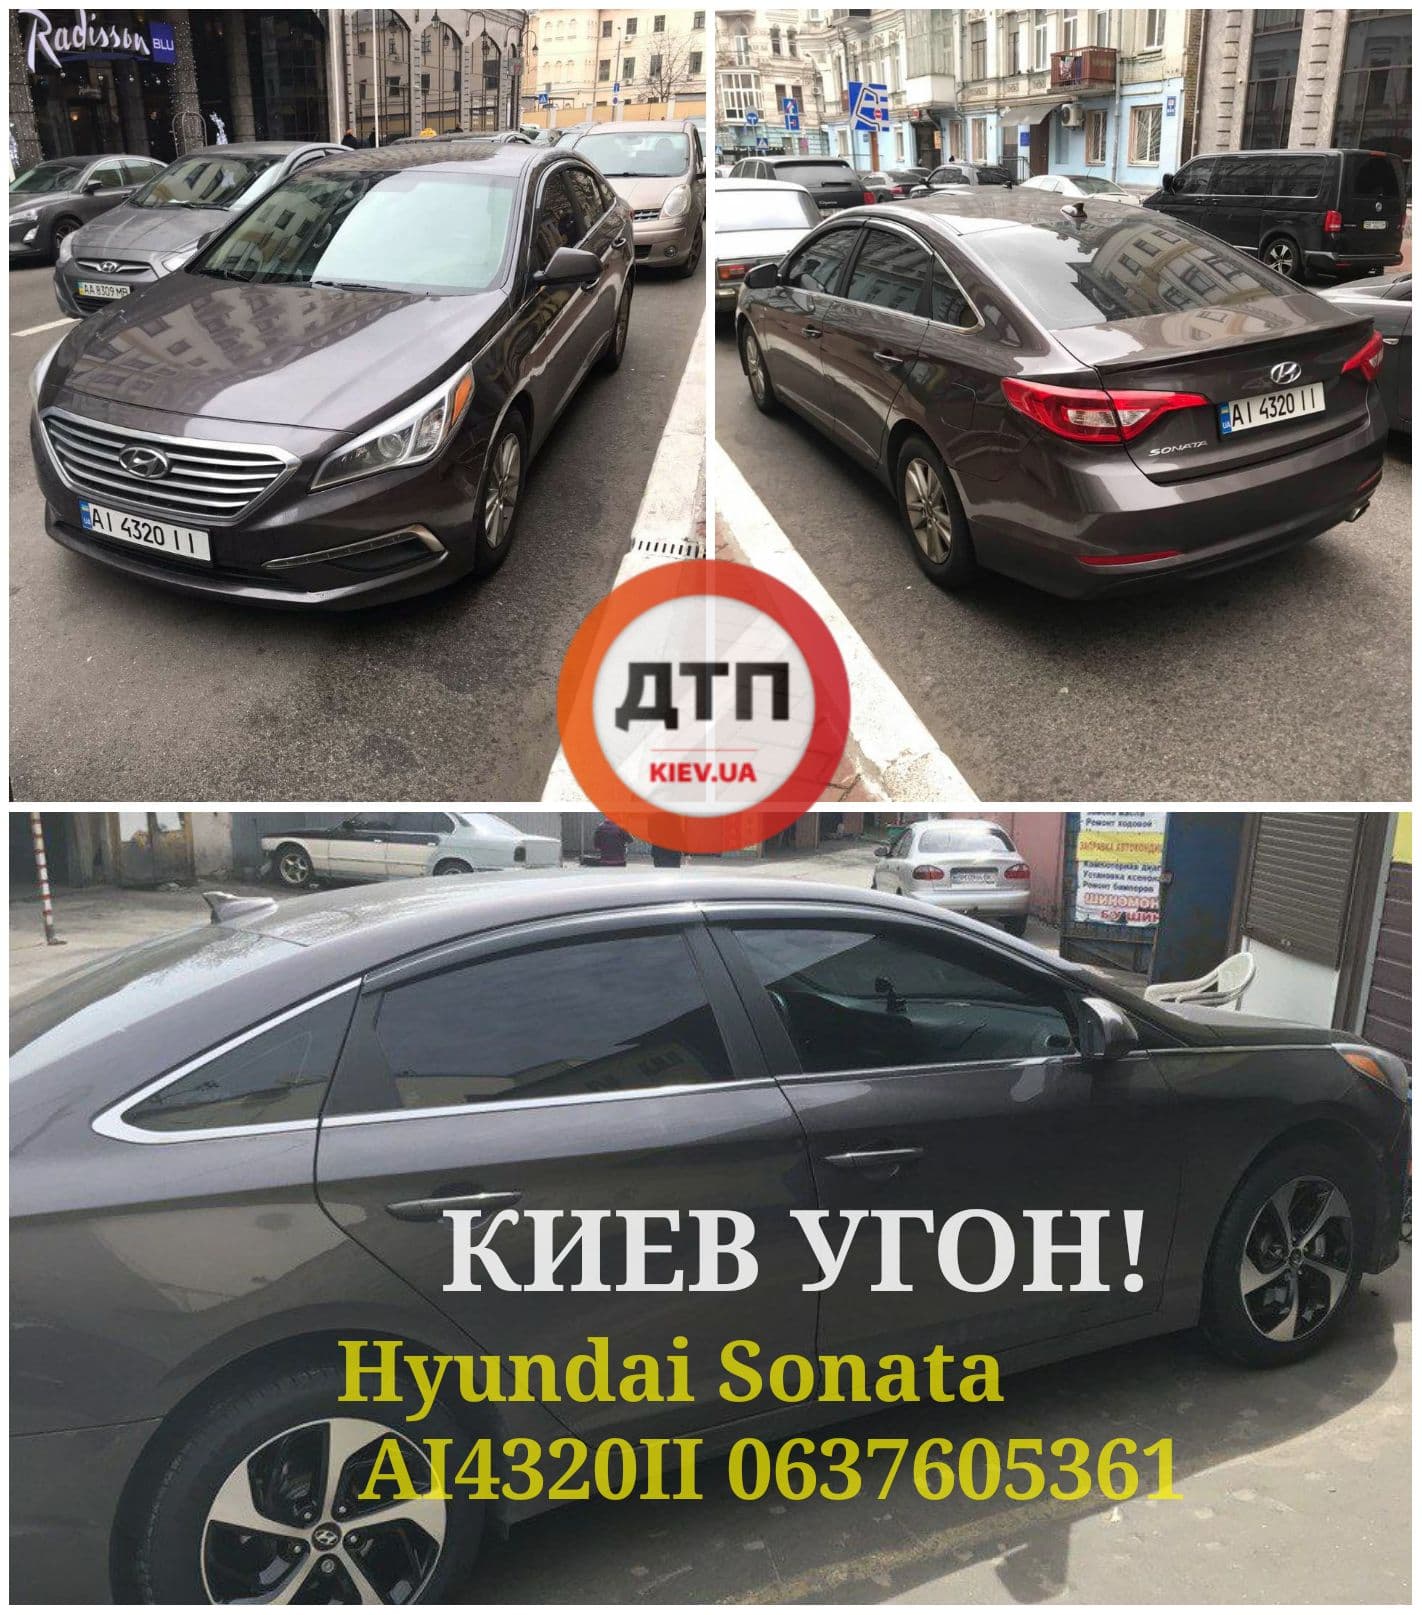 В Киеве на улице Алишера Навои, 69 угнали автомобиль Hyundai Sonata AI4320II